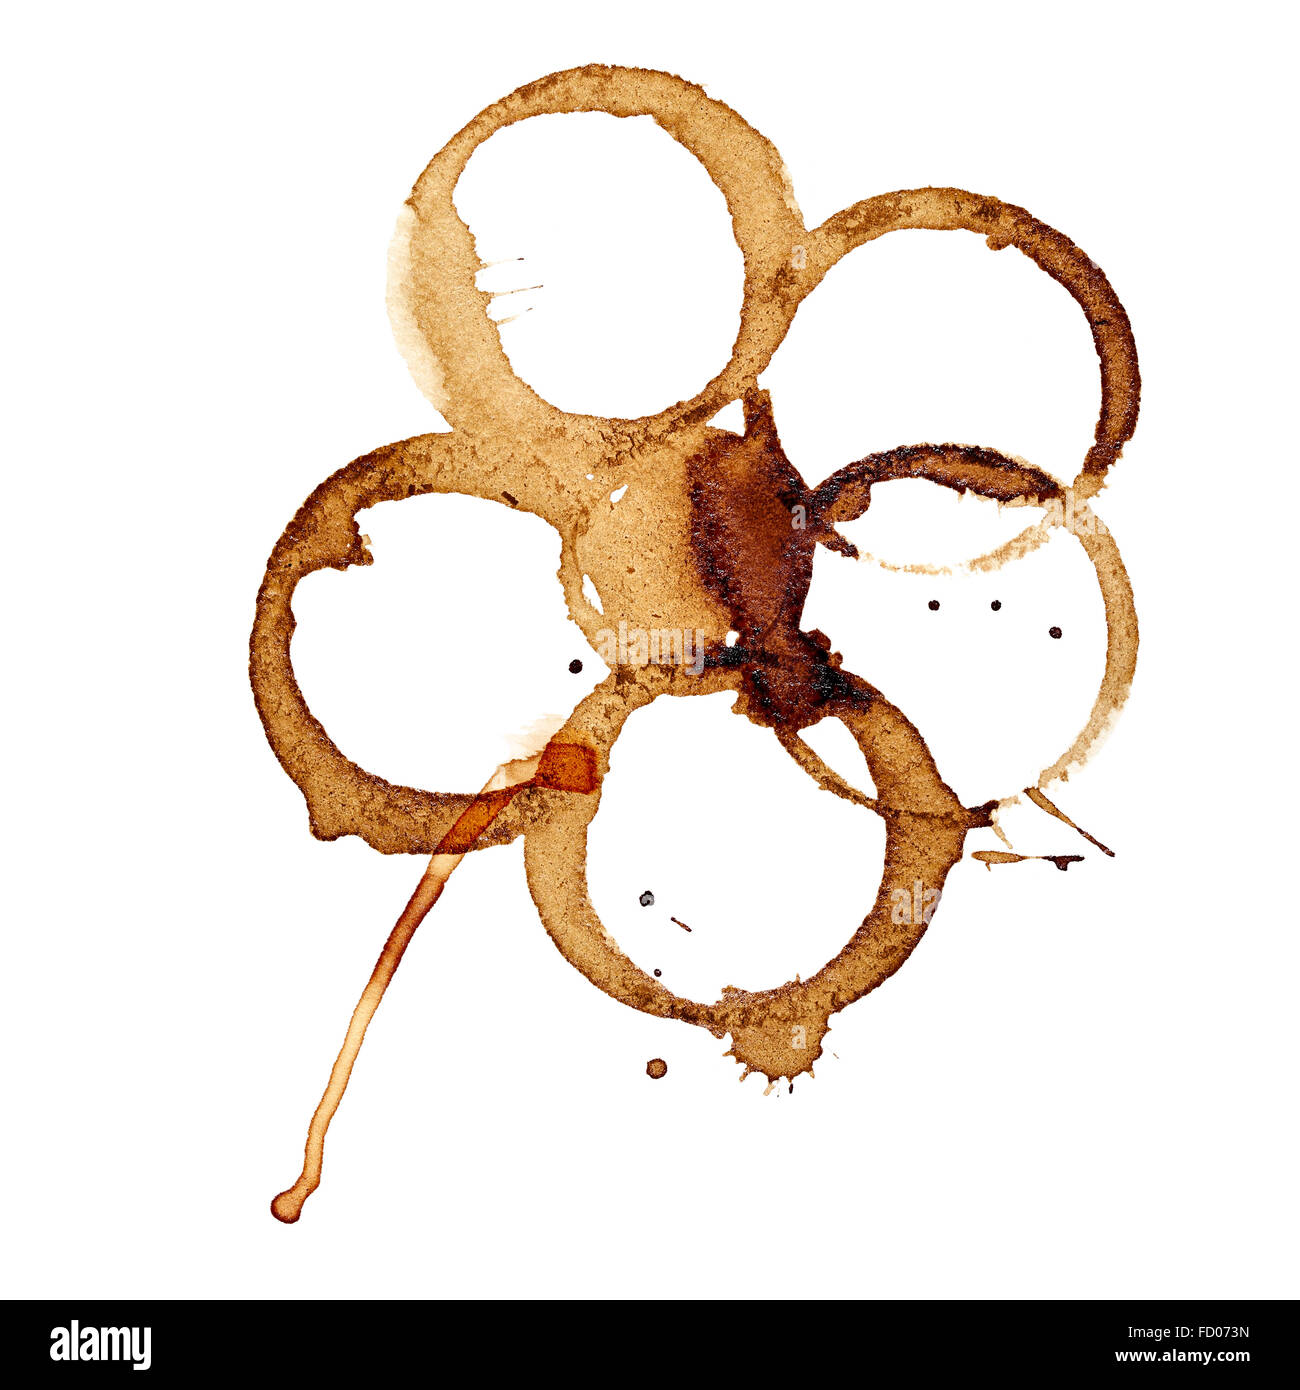 Kaffee Blume - Flecken isoliert auf weißem Hintergrund (gebrauchte Bohnenkaffee) Stockfoto